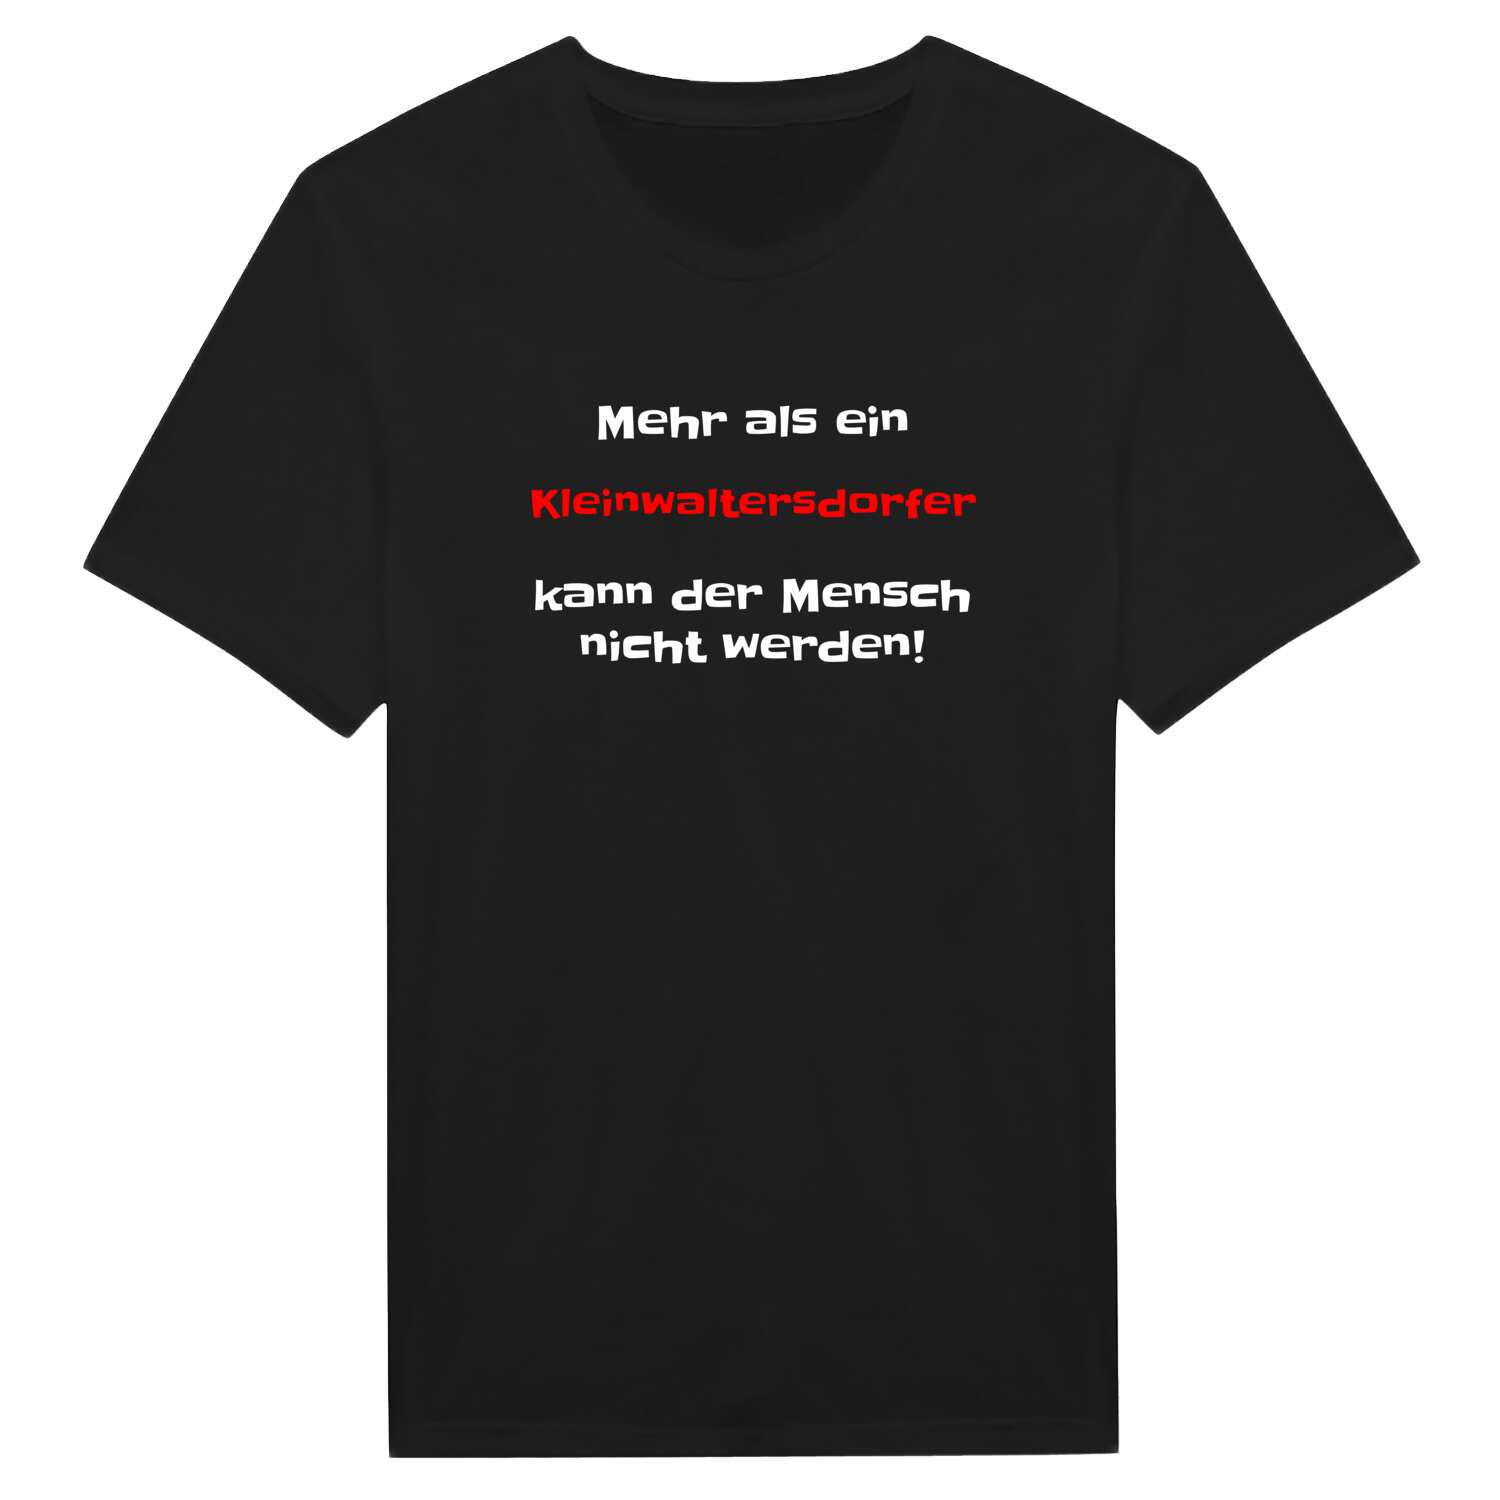 Kleinwaltersdorf T-Shirt »Mehr als ein«